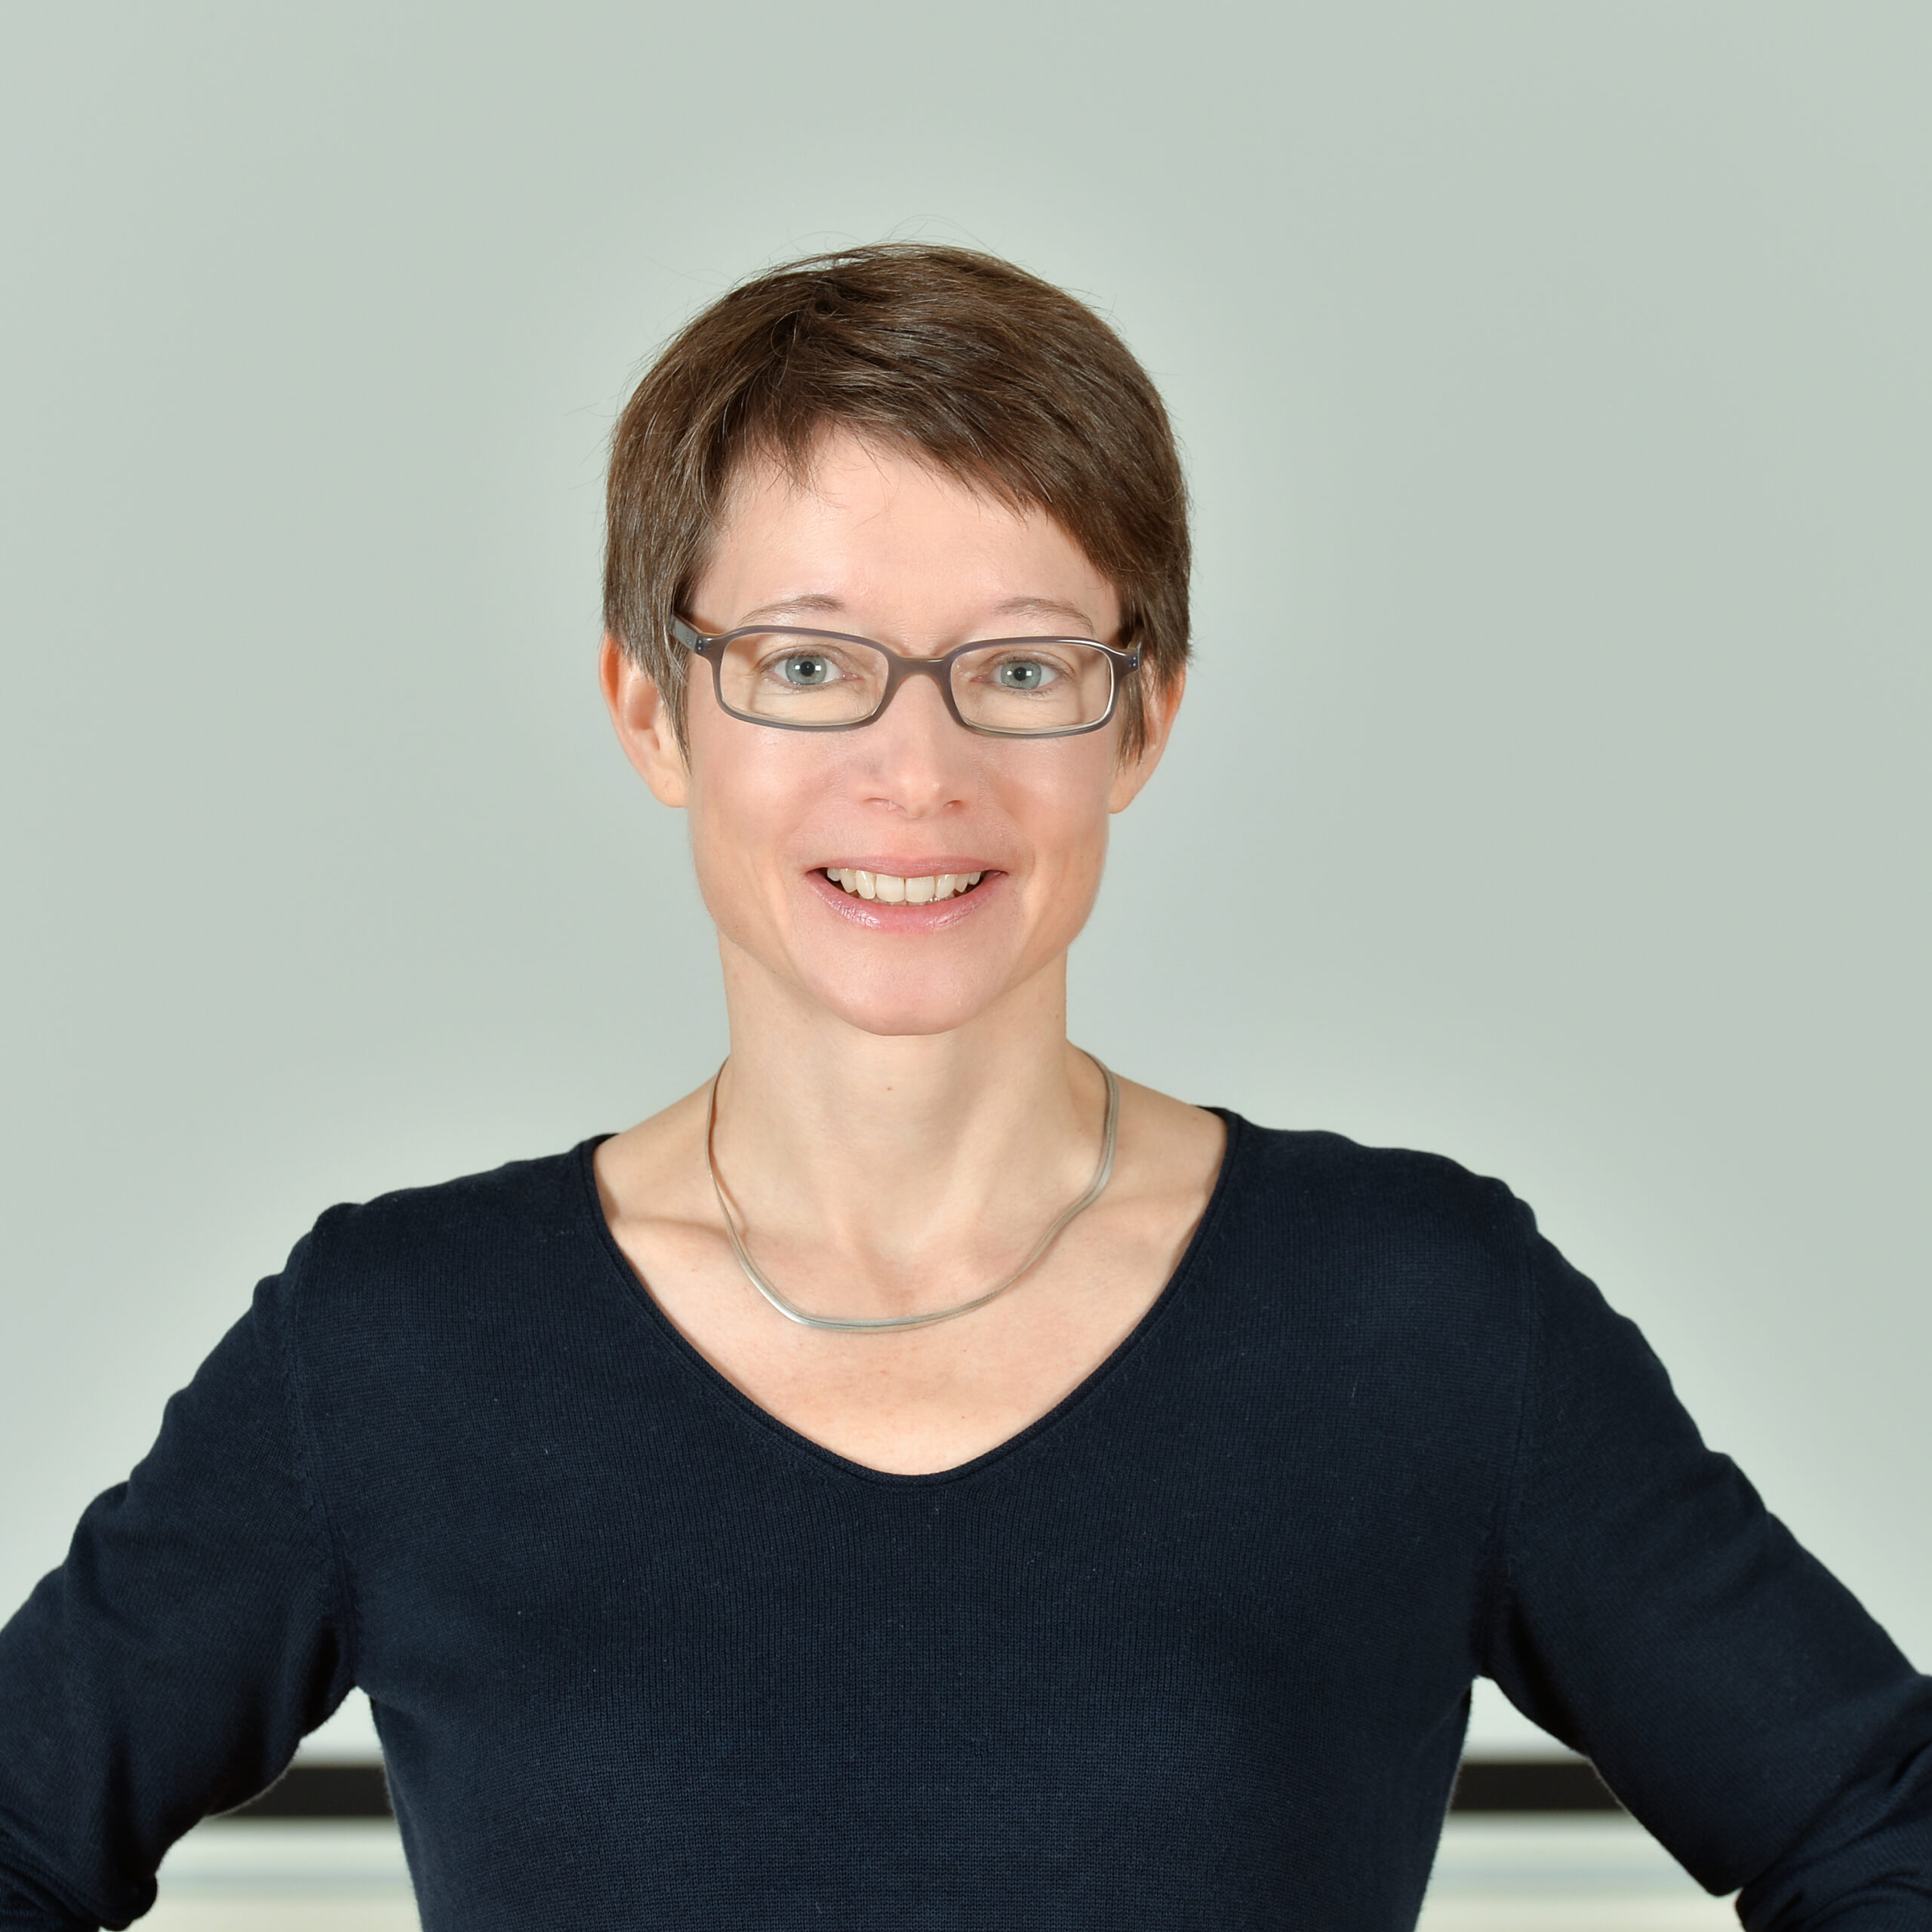 Profilbild von Dr. Jenny Tränkmann in einem schwarzen Langarmshirt.